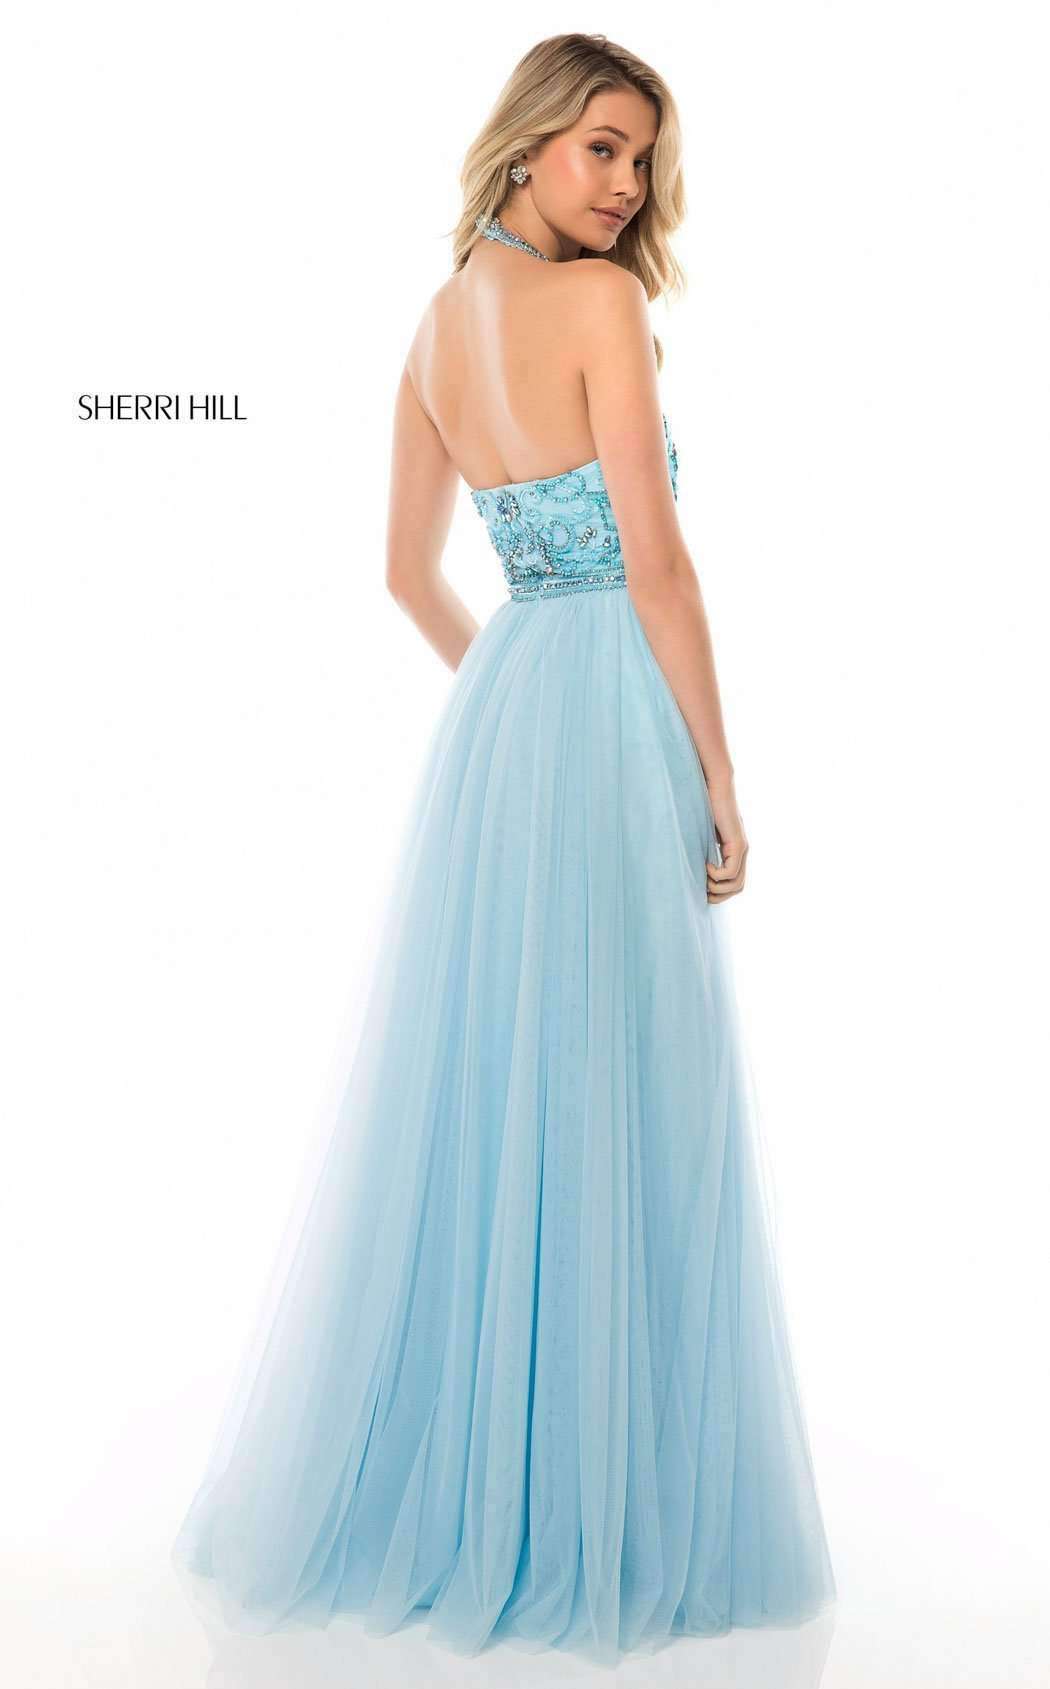 Sherri Hill 51604 Dress | Buy Designer Gowns & Evening Dresses ...